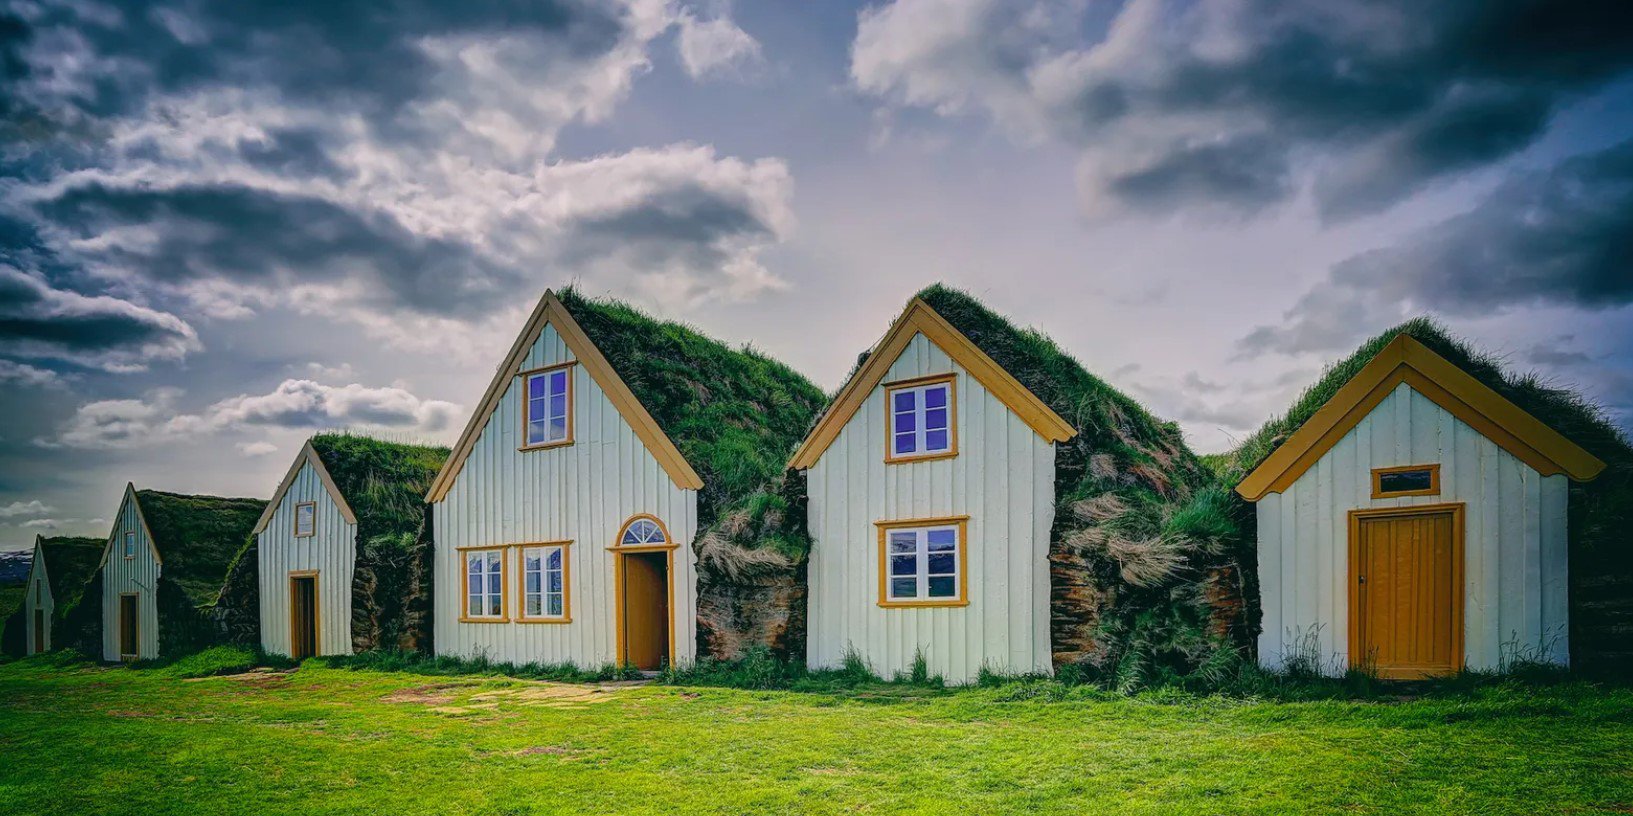 Ισλανδία: Το αρχαίο μυστικό στο χτίσιμο των σπιτιών που συνέβαλε στην επιβίωση του πολιτισμού